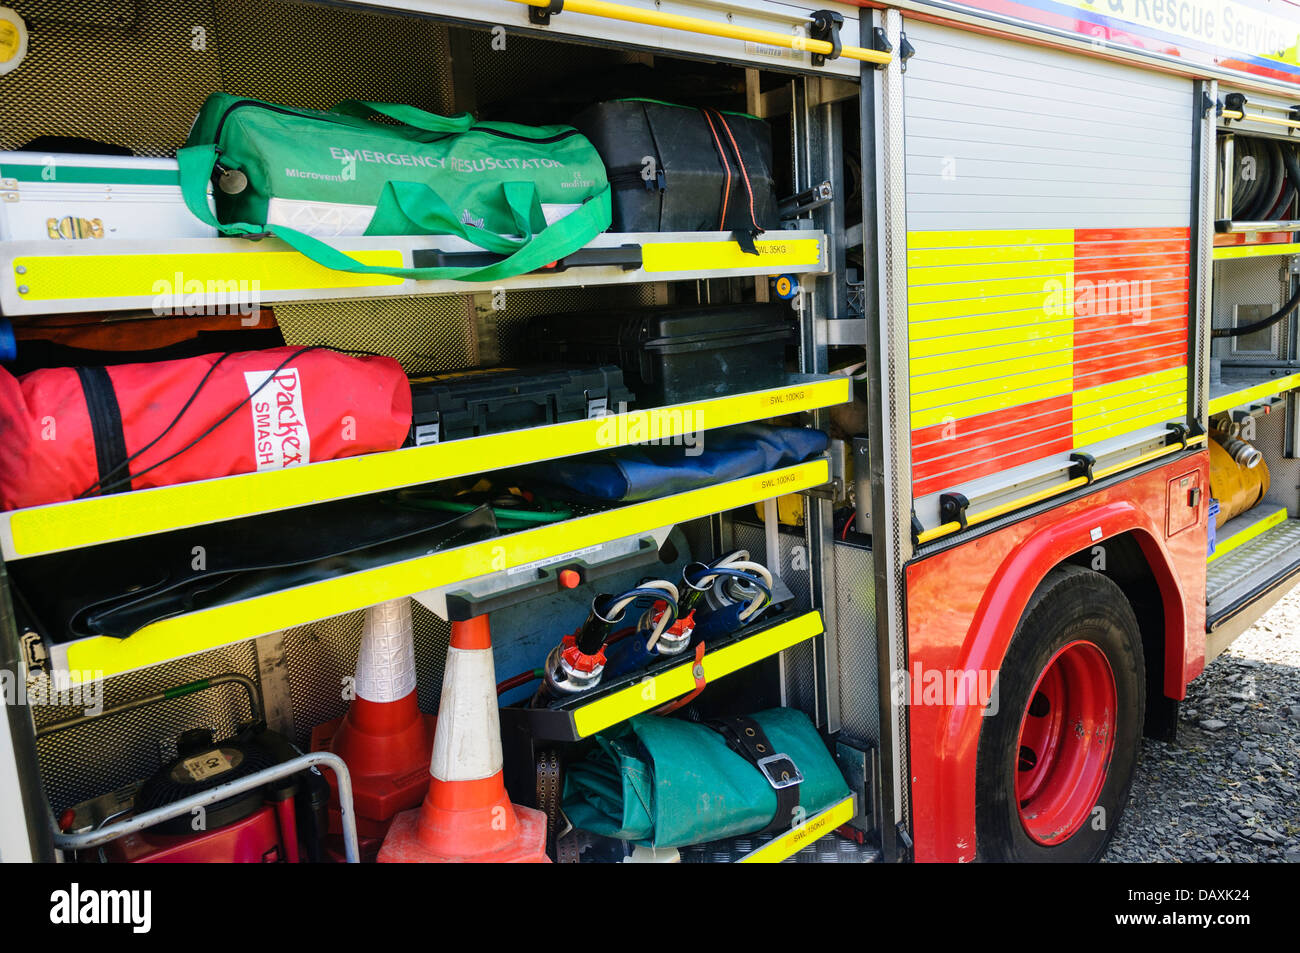 Geräte an einem Nordirland Feuer und Rettung Service Fahrzeug. Stockfoto